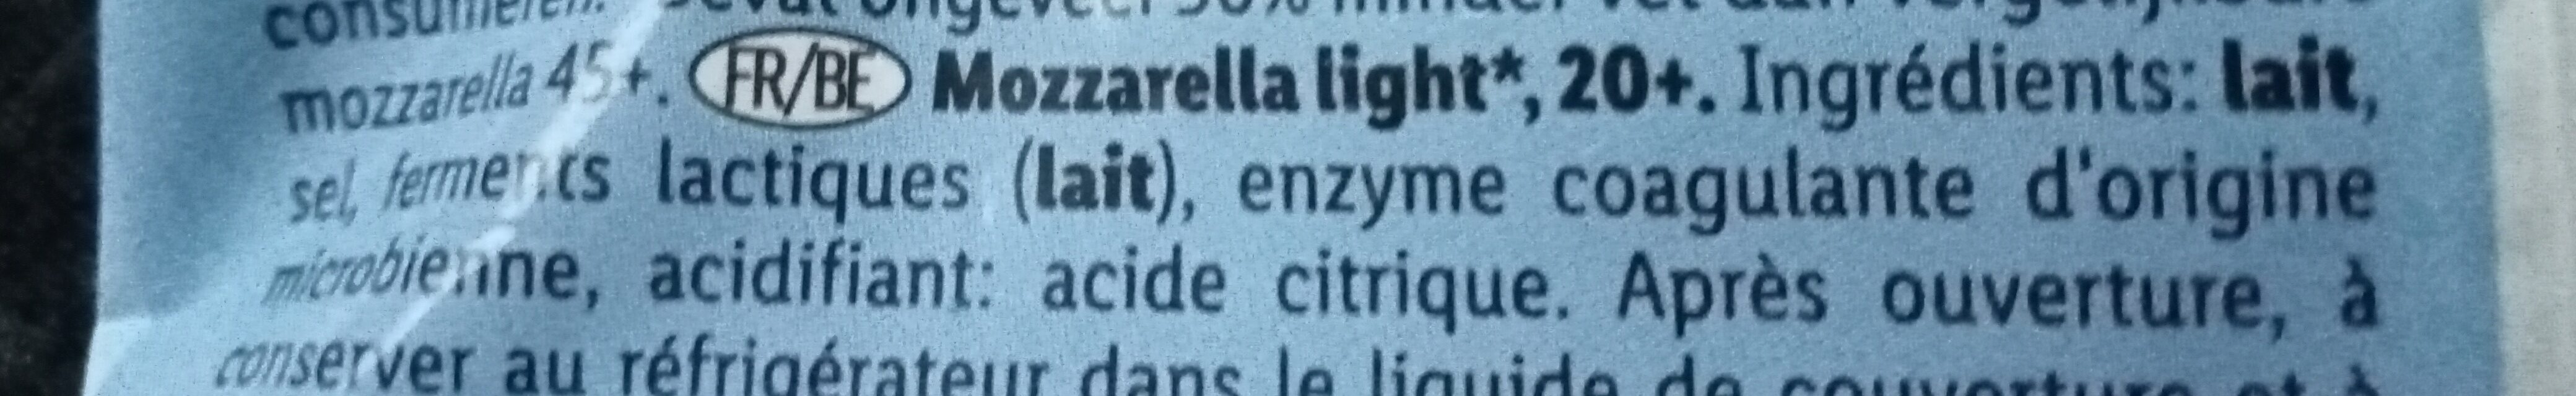 Mozzarella Light - Ingredienti - fr